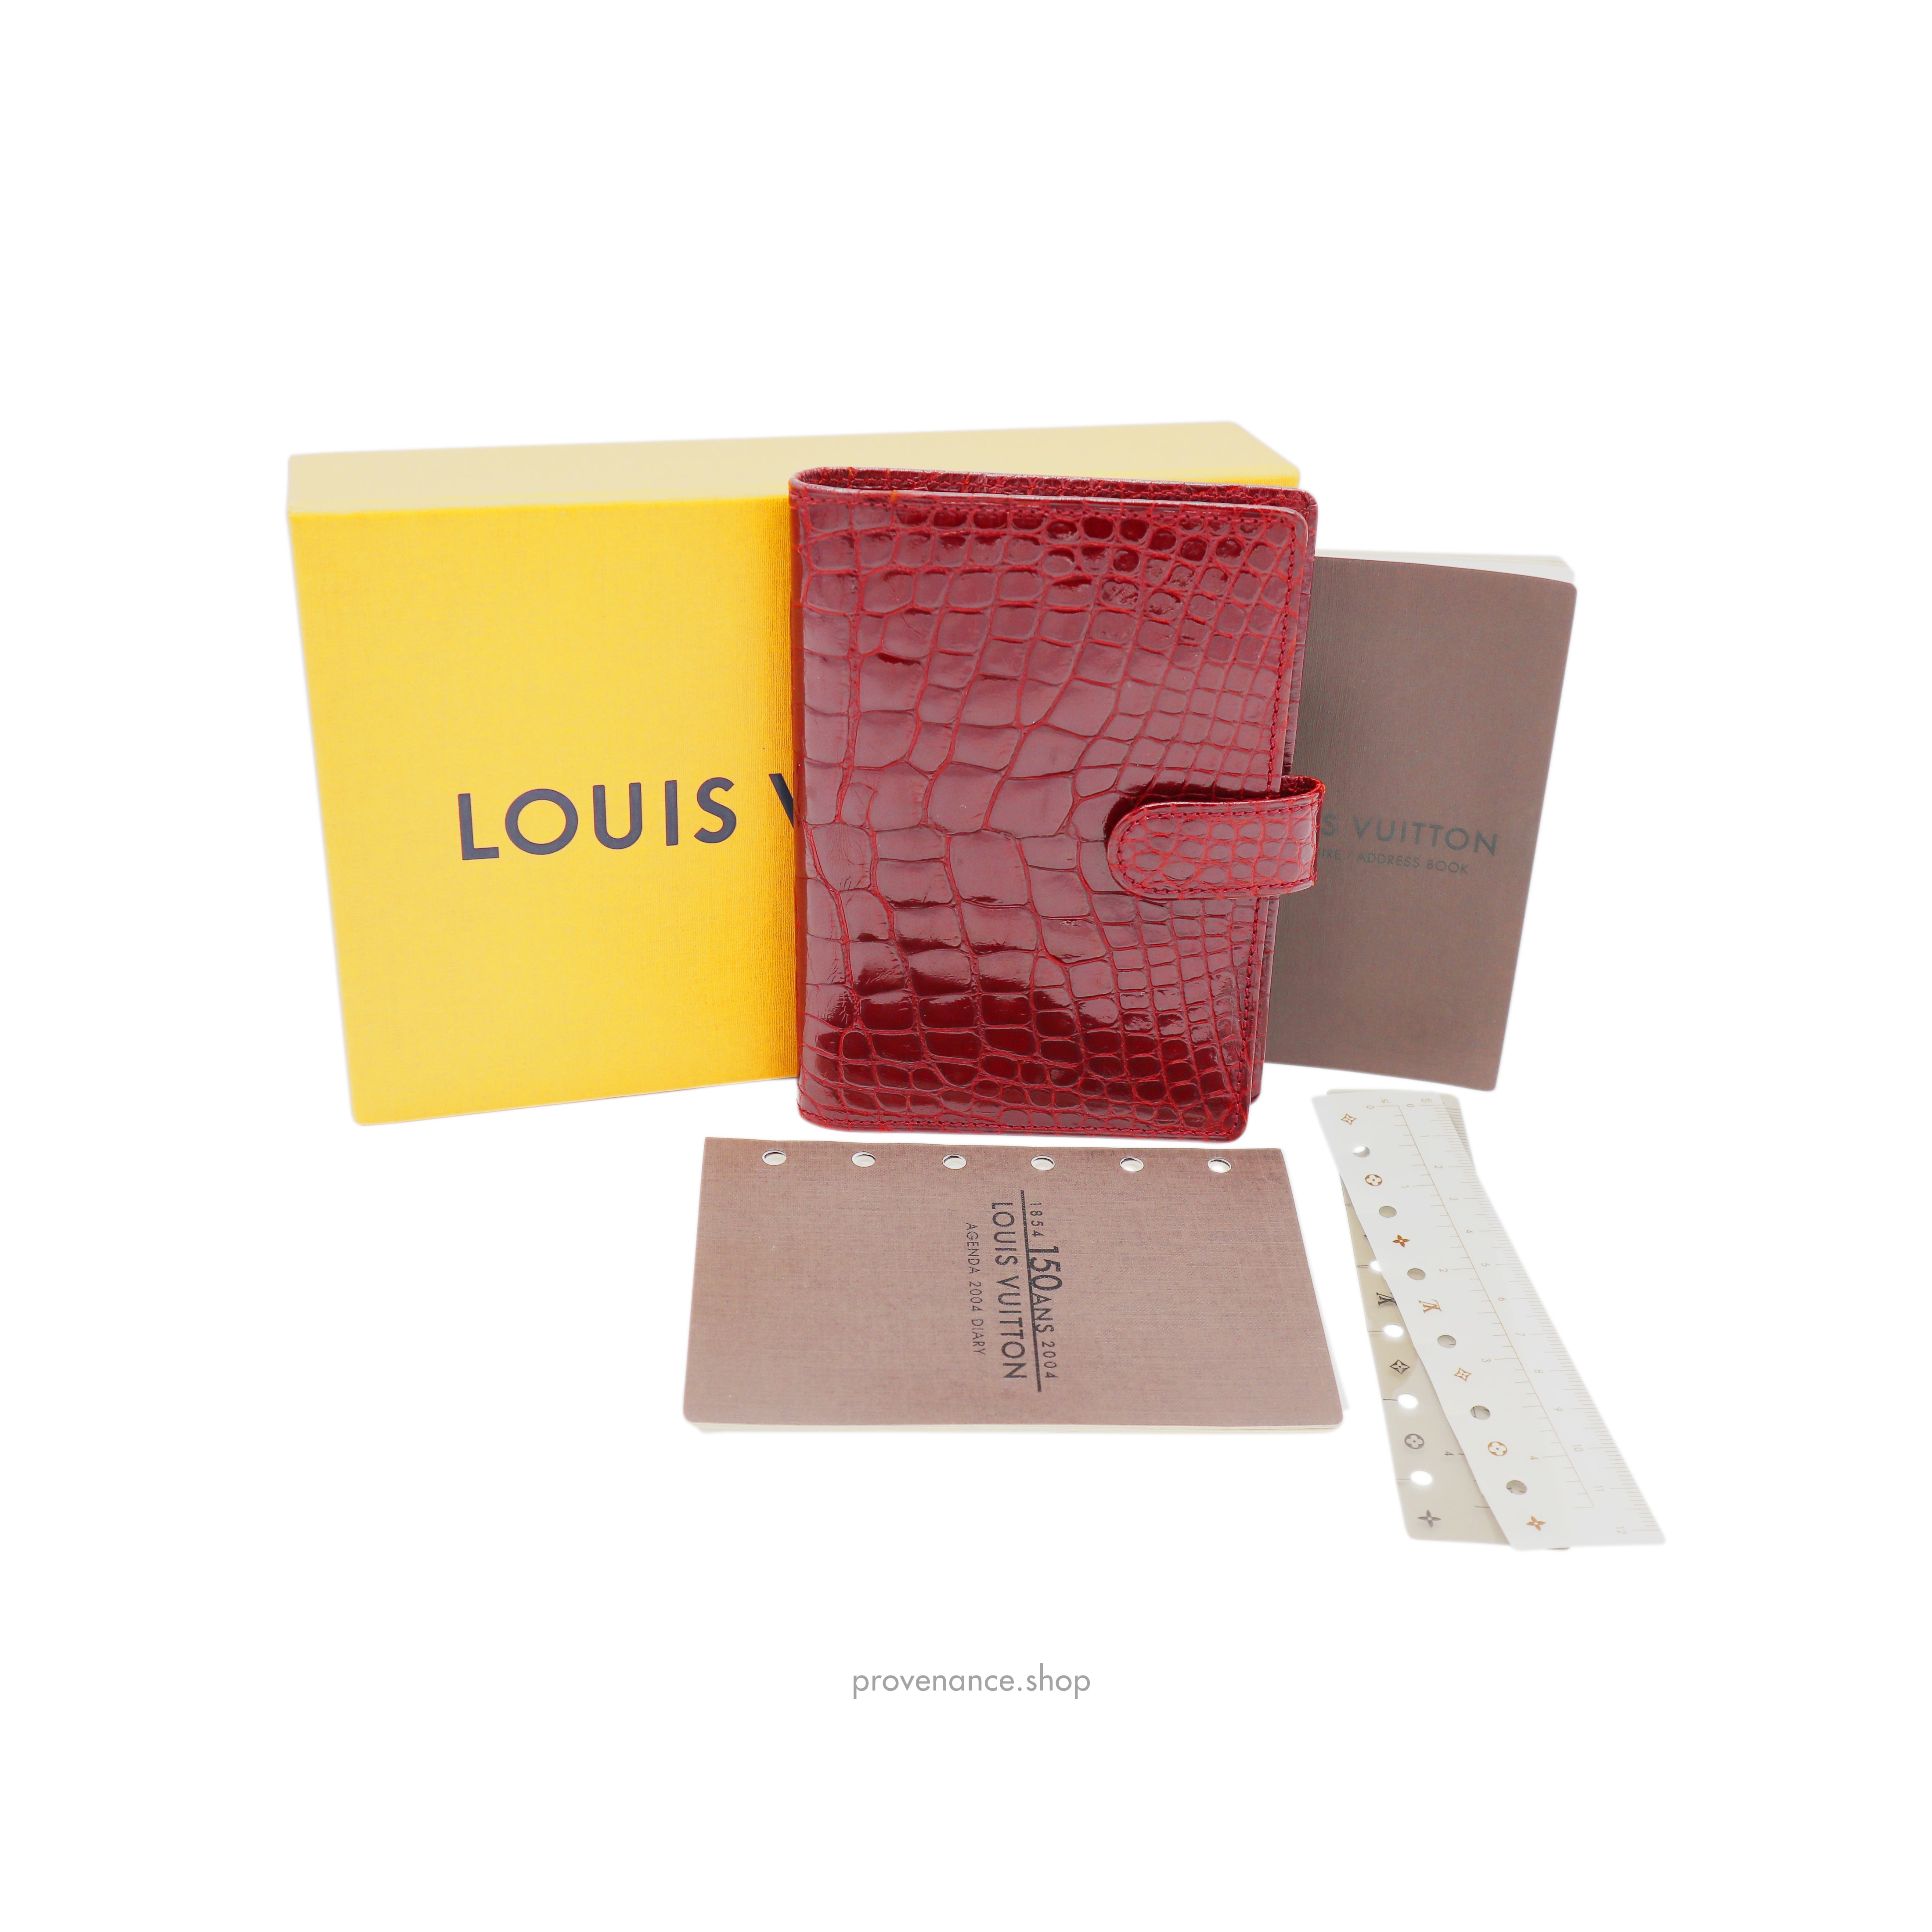 Louis Vuitton - Agenda fonctionnel - *K A W A I I - B L O G